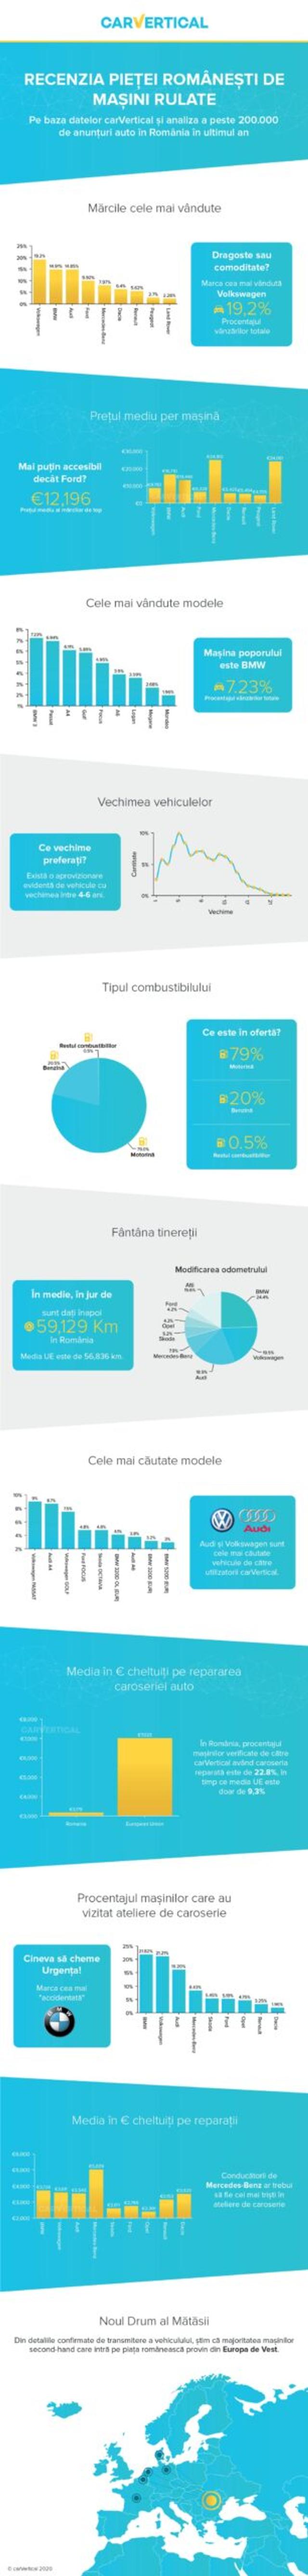 Mașini uzate în România informatii grafice